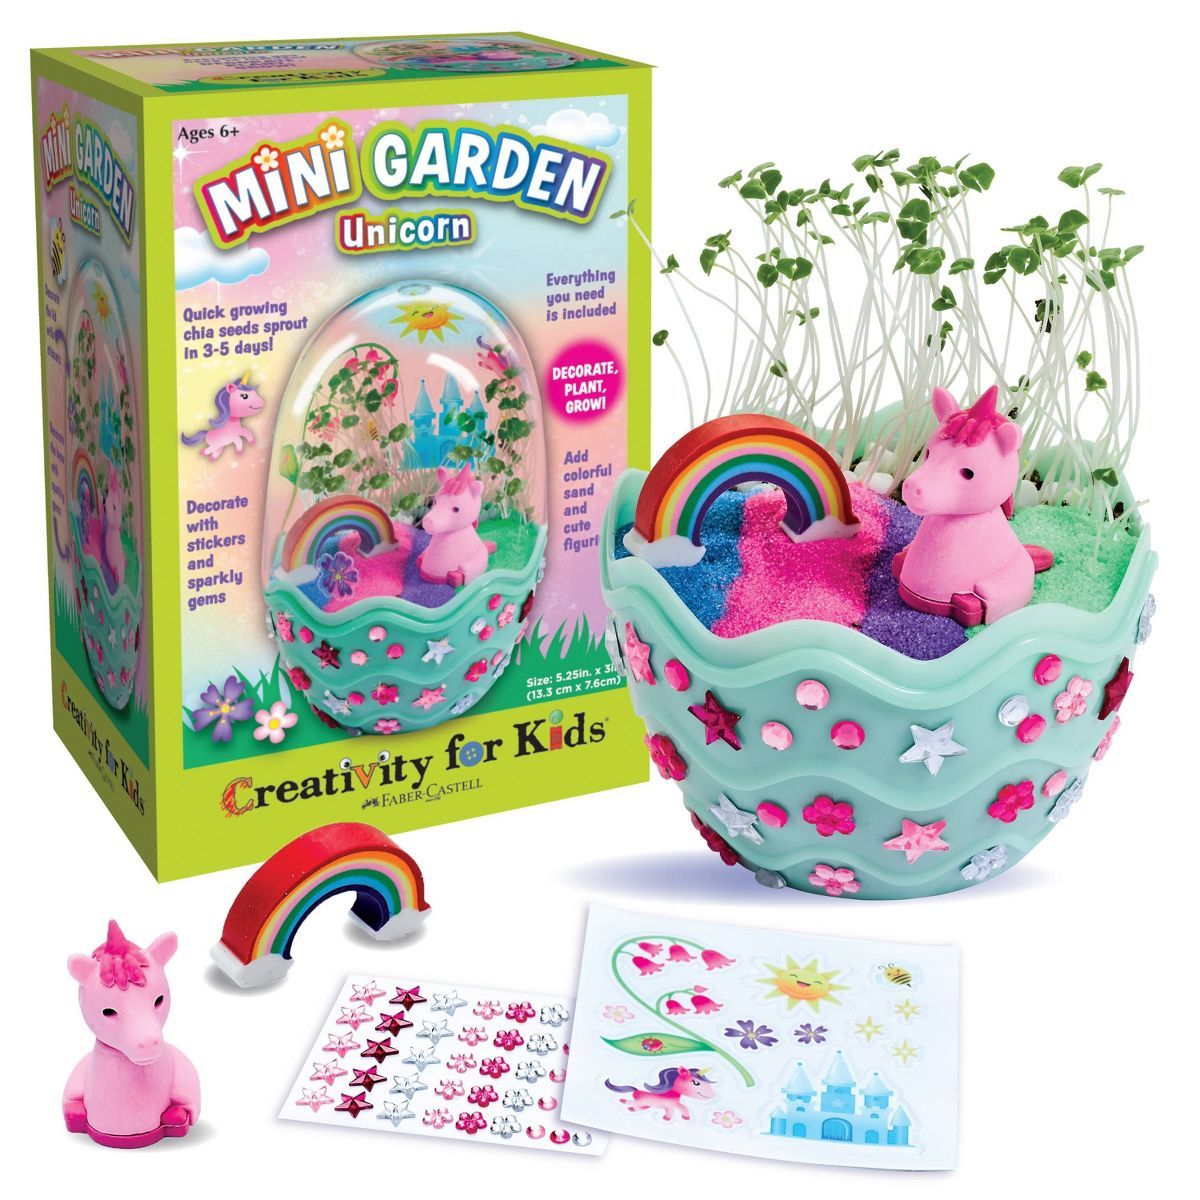 Creativity for Kids Mini Garden Unicorn Activity Kit | Target